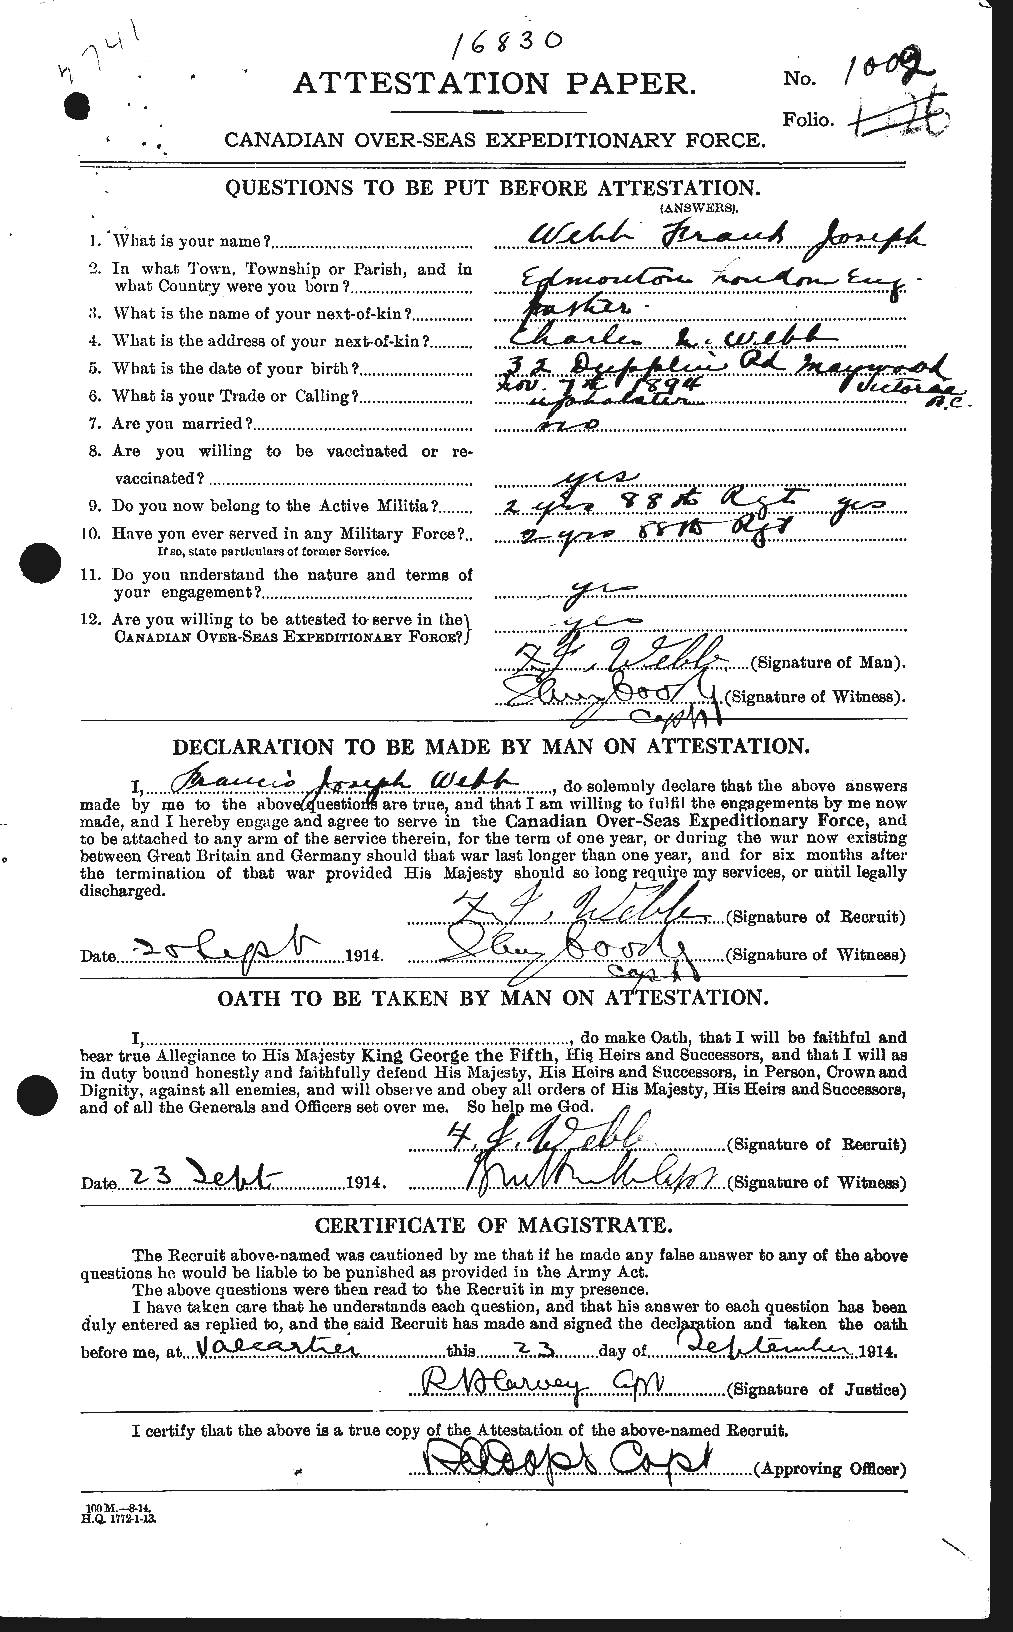 Dossiers du Personnel de la Première Guerre mondiale - CEC 661778a